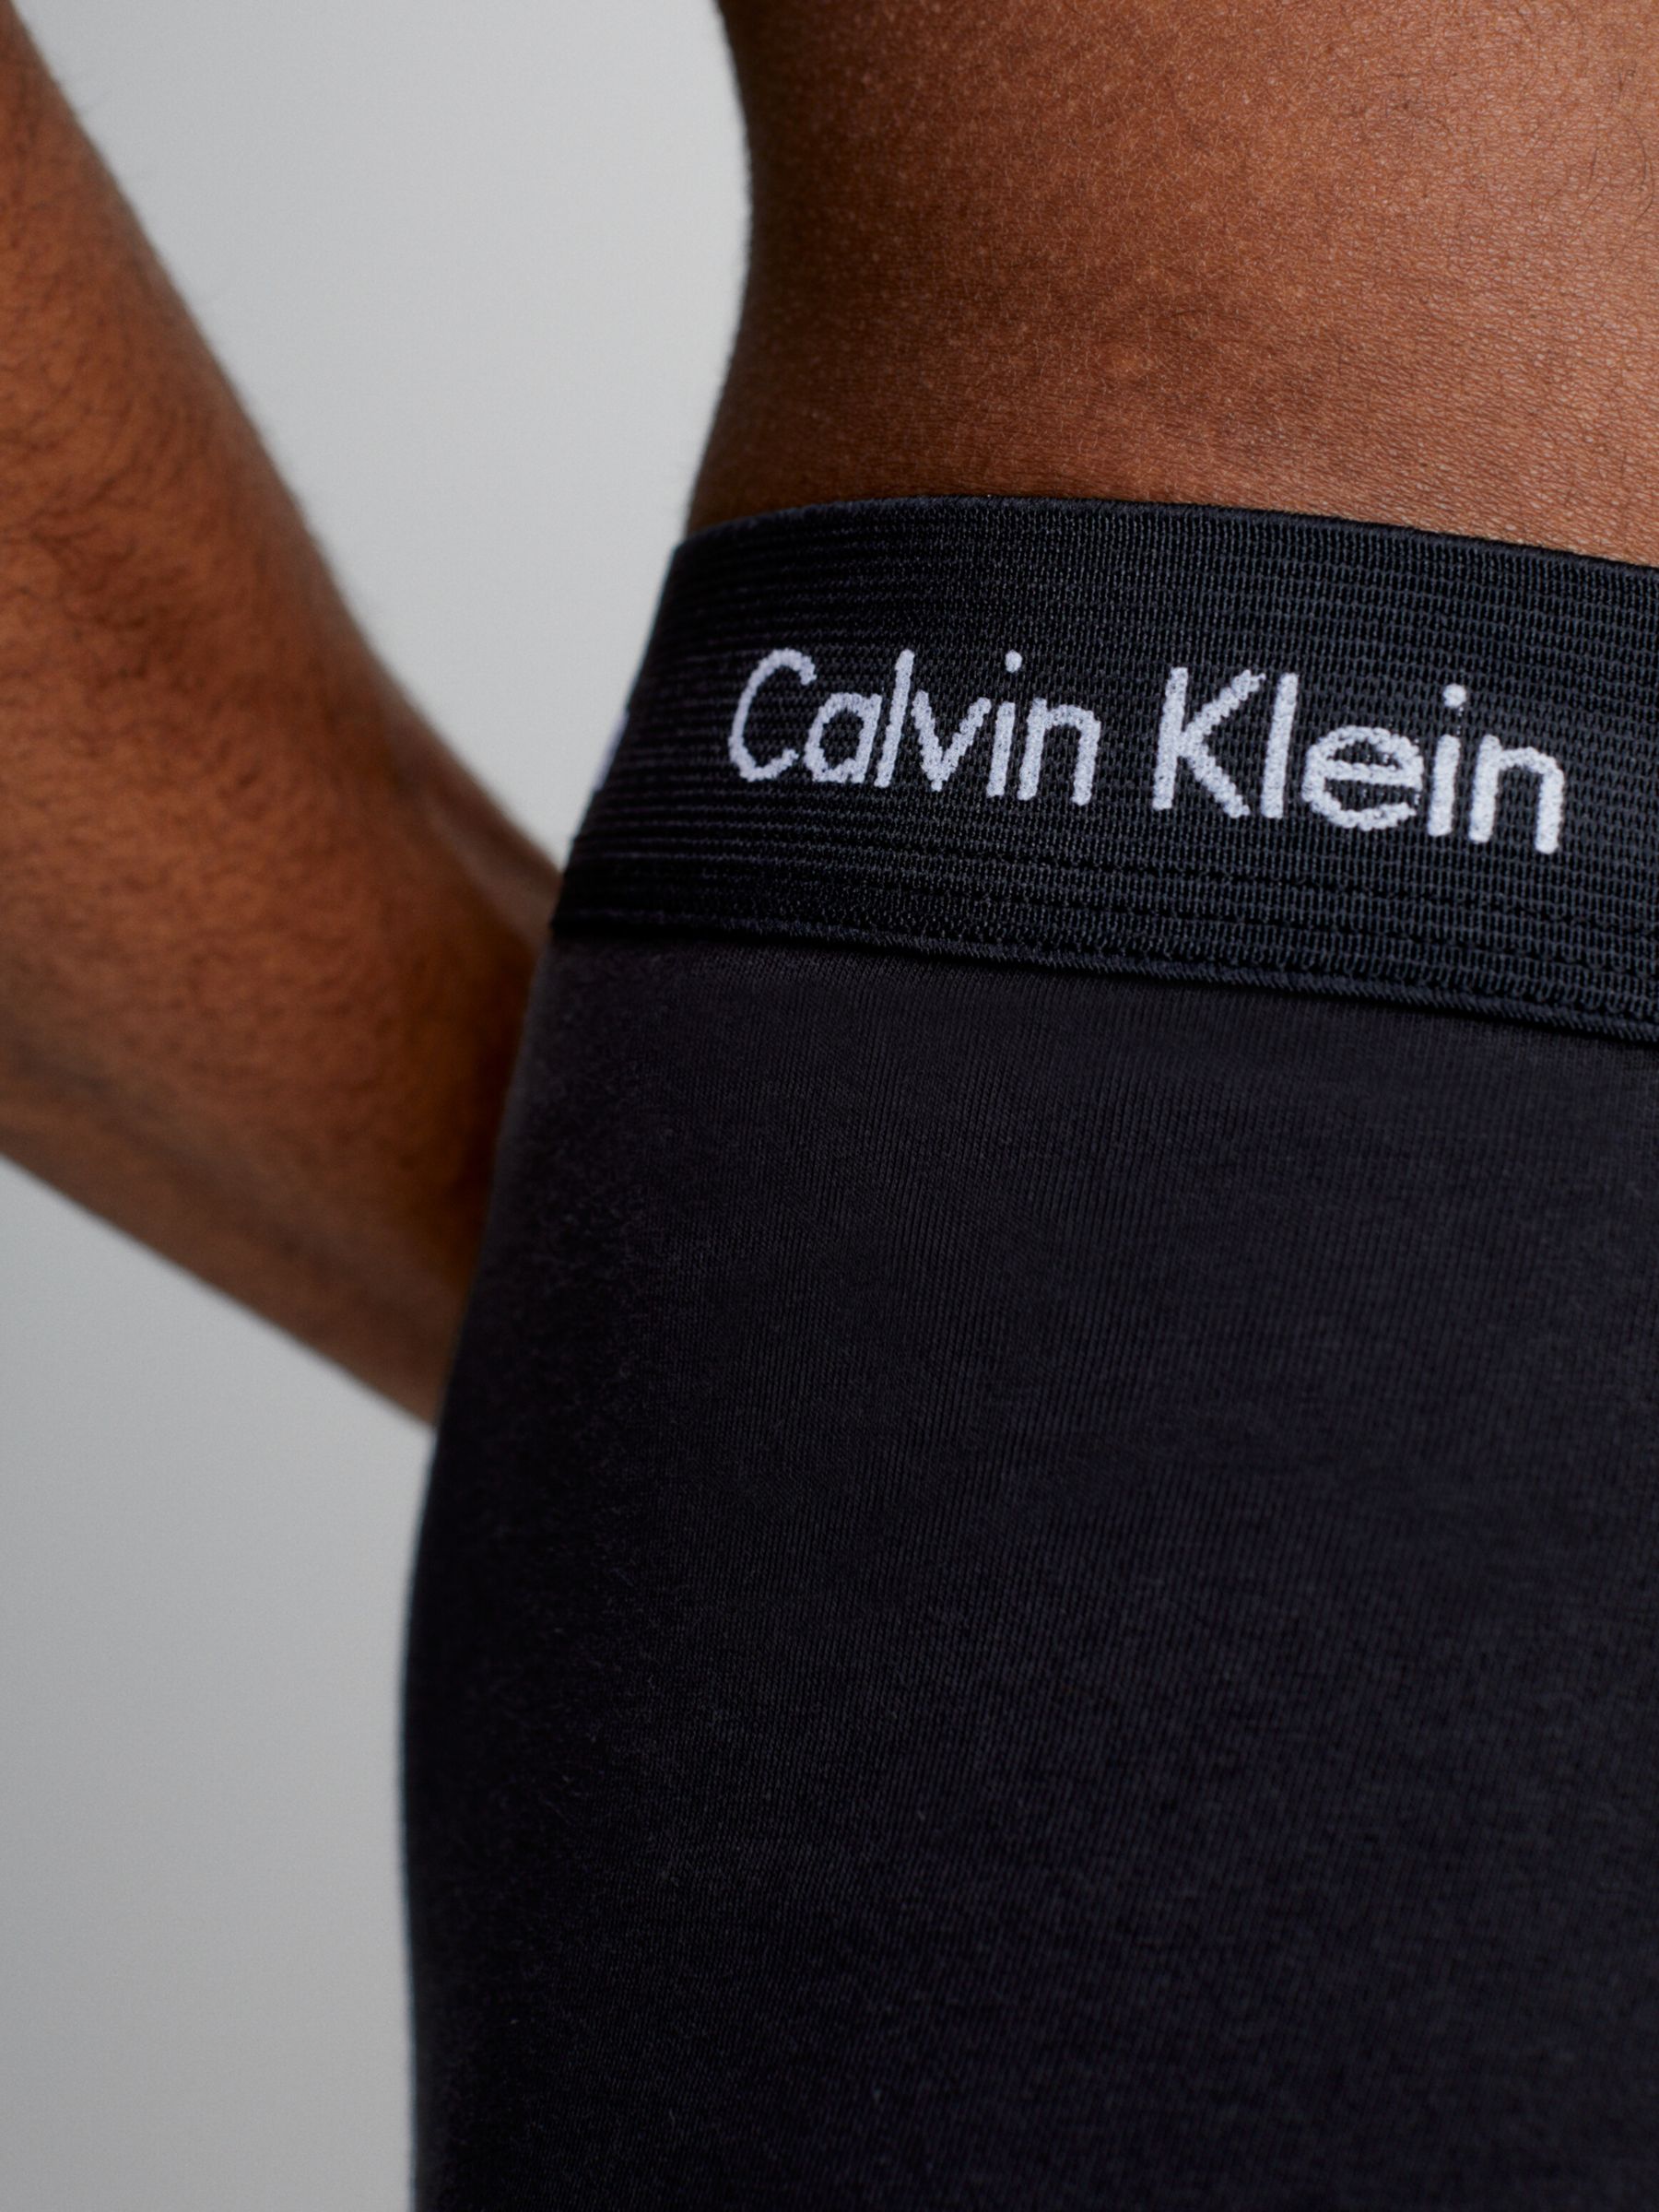 Calvin Klein Cotton Stretch Boxer Brief, Pack of 3, Black/Blue Shadow/Cobalt Water, S